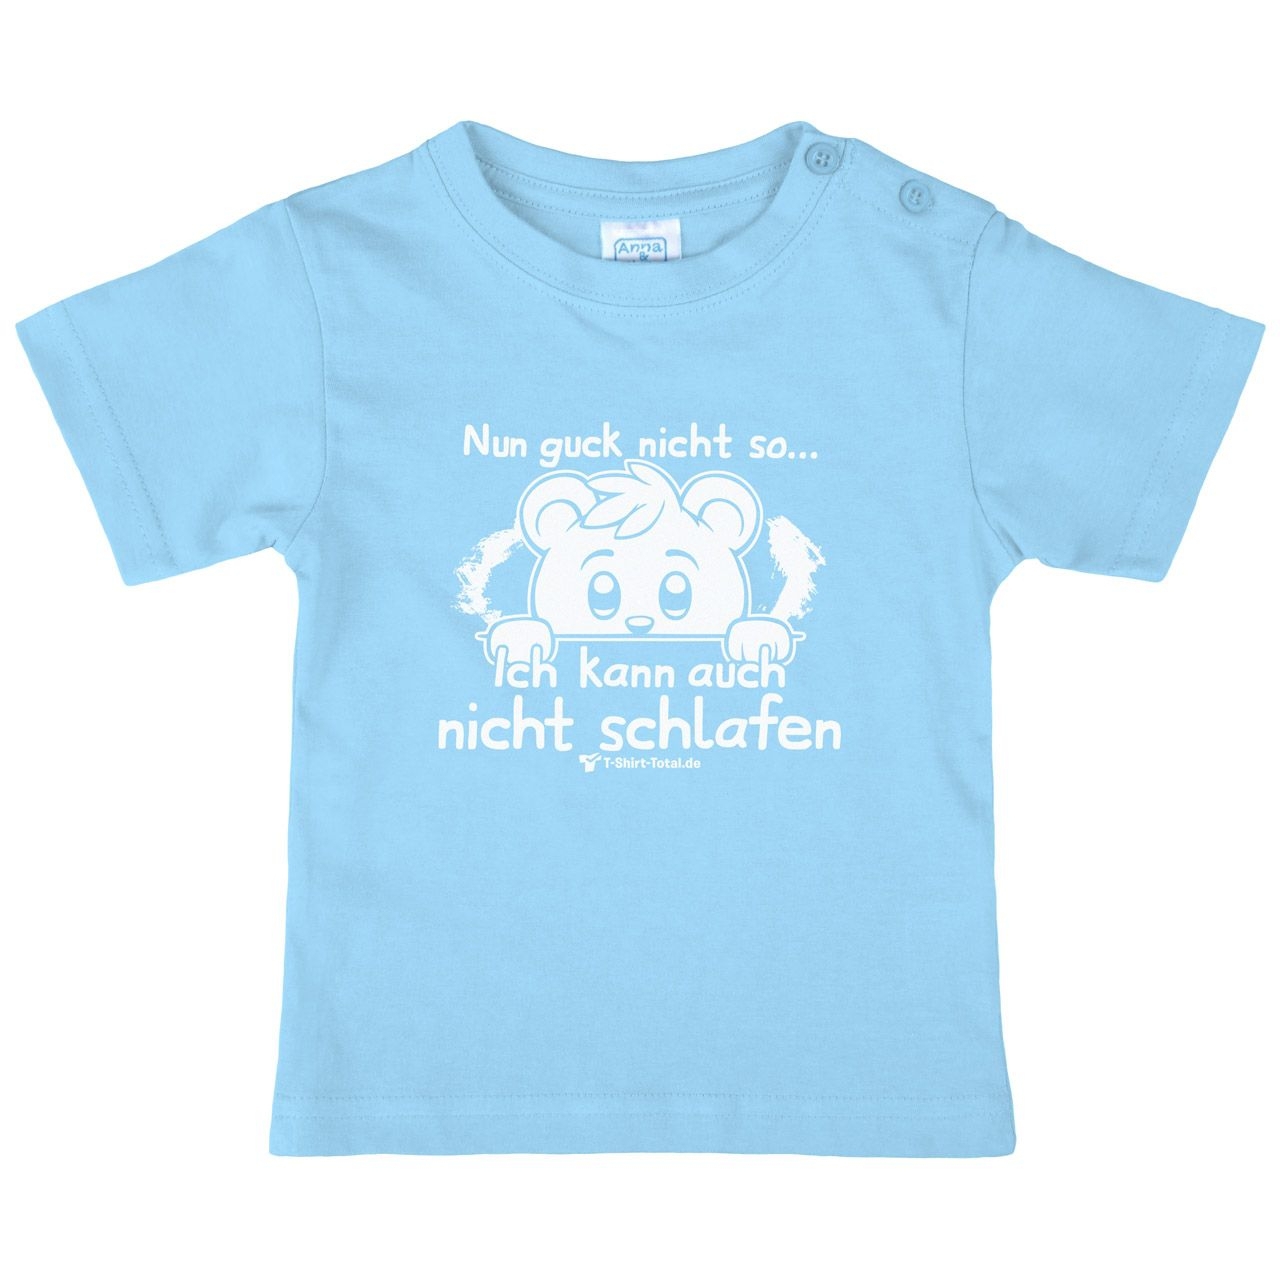 Guck nicht so Kinder T-Shirt hellblau 68 / 74